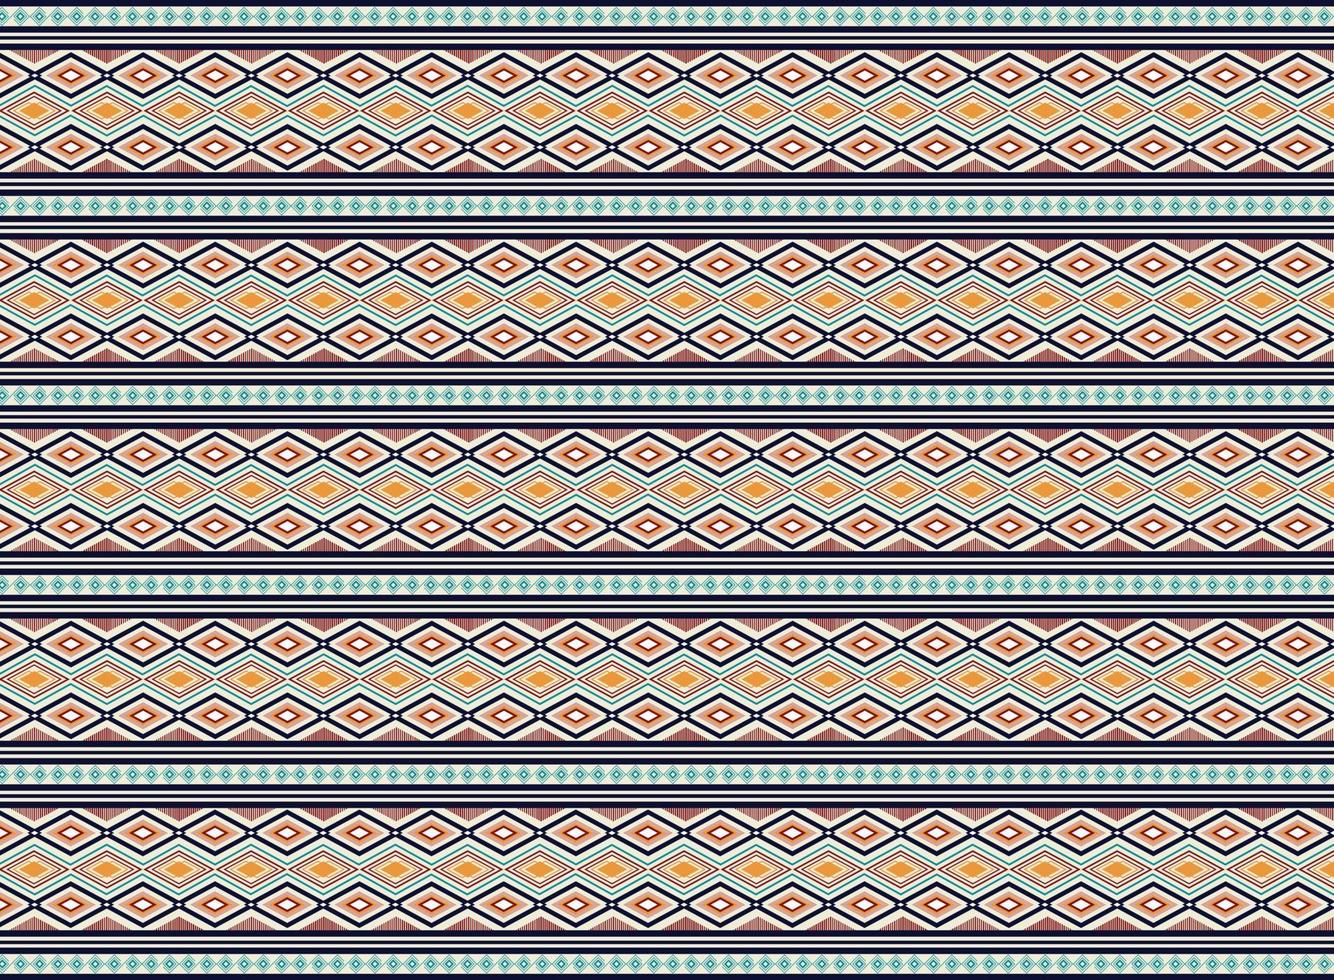 geometrische etnische patroon vector design voor grondstof, achtergrond, kleding, verpakking, batik, stof, naadloos patroon.